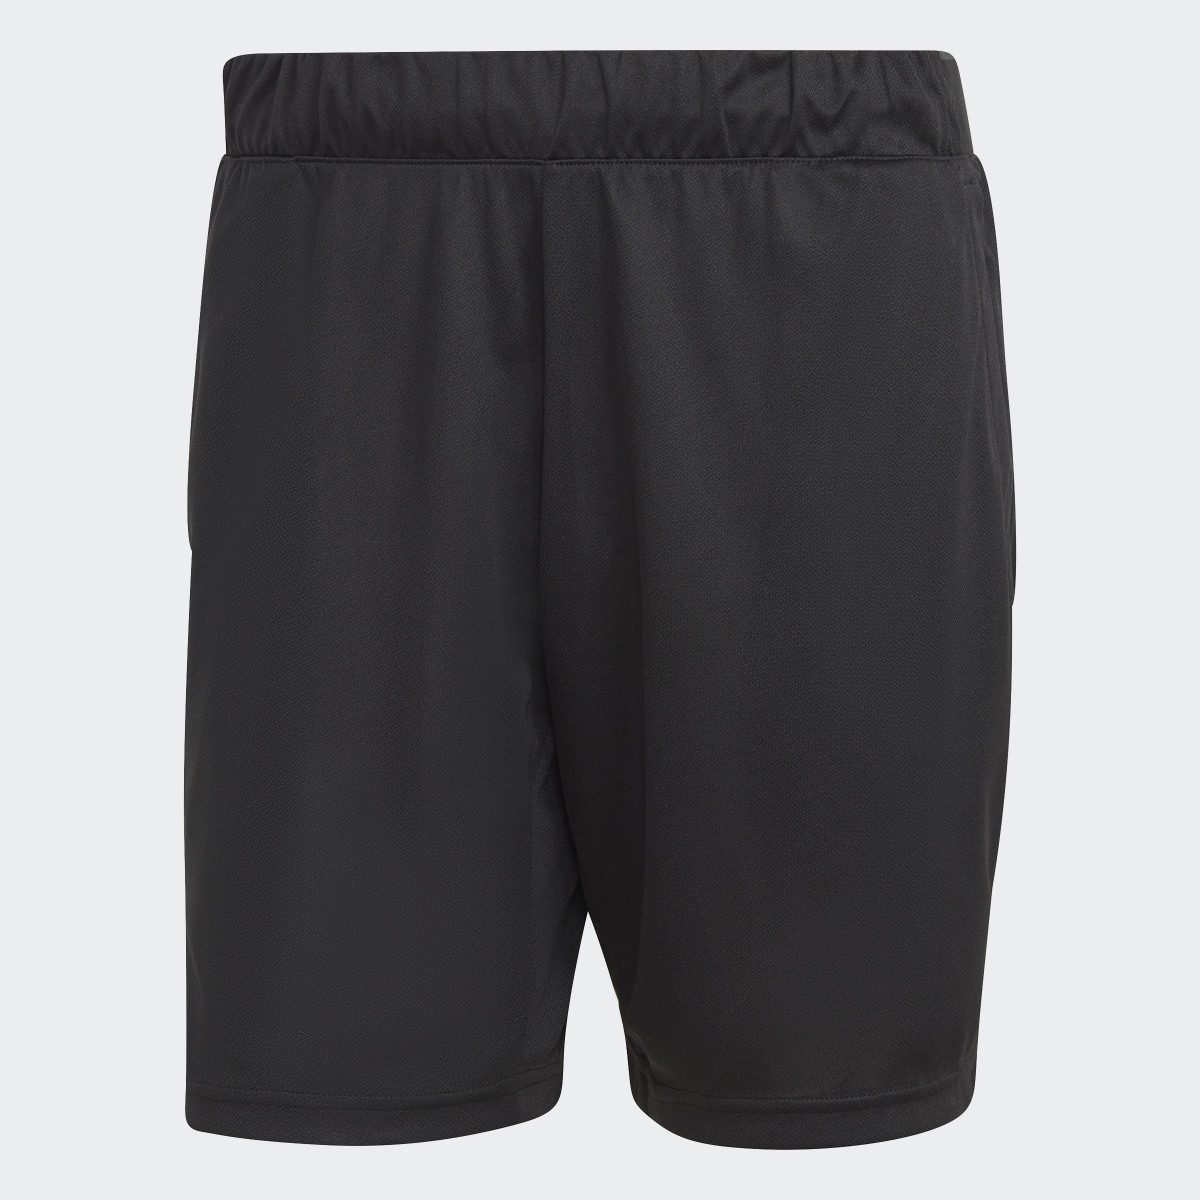 Adidas HEAT.RDY Knit Tennis Shorts. 4